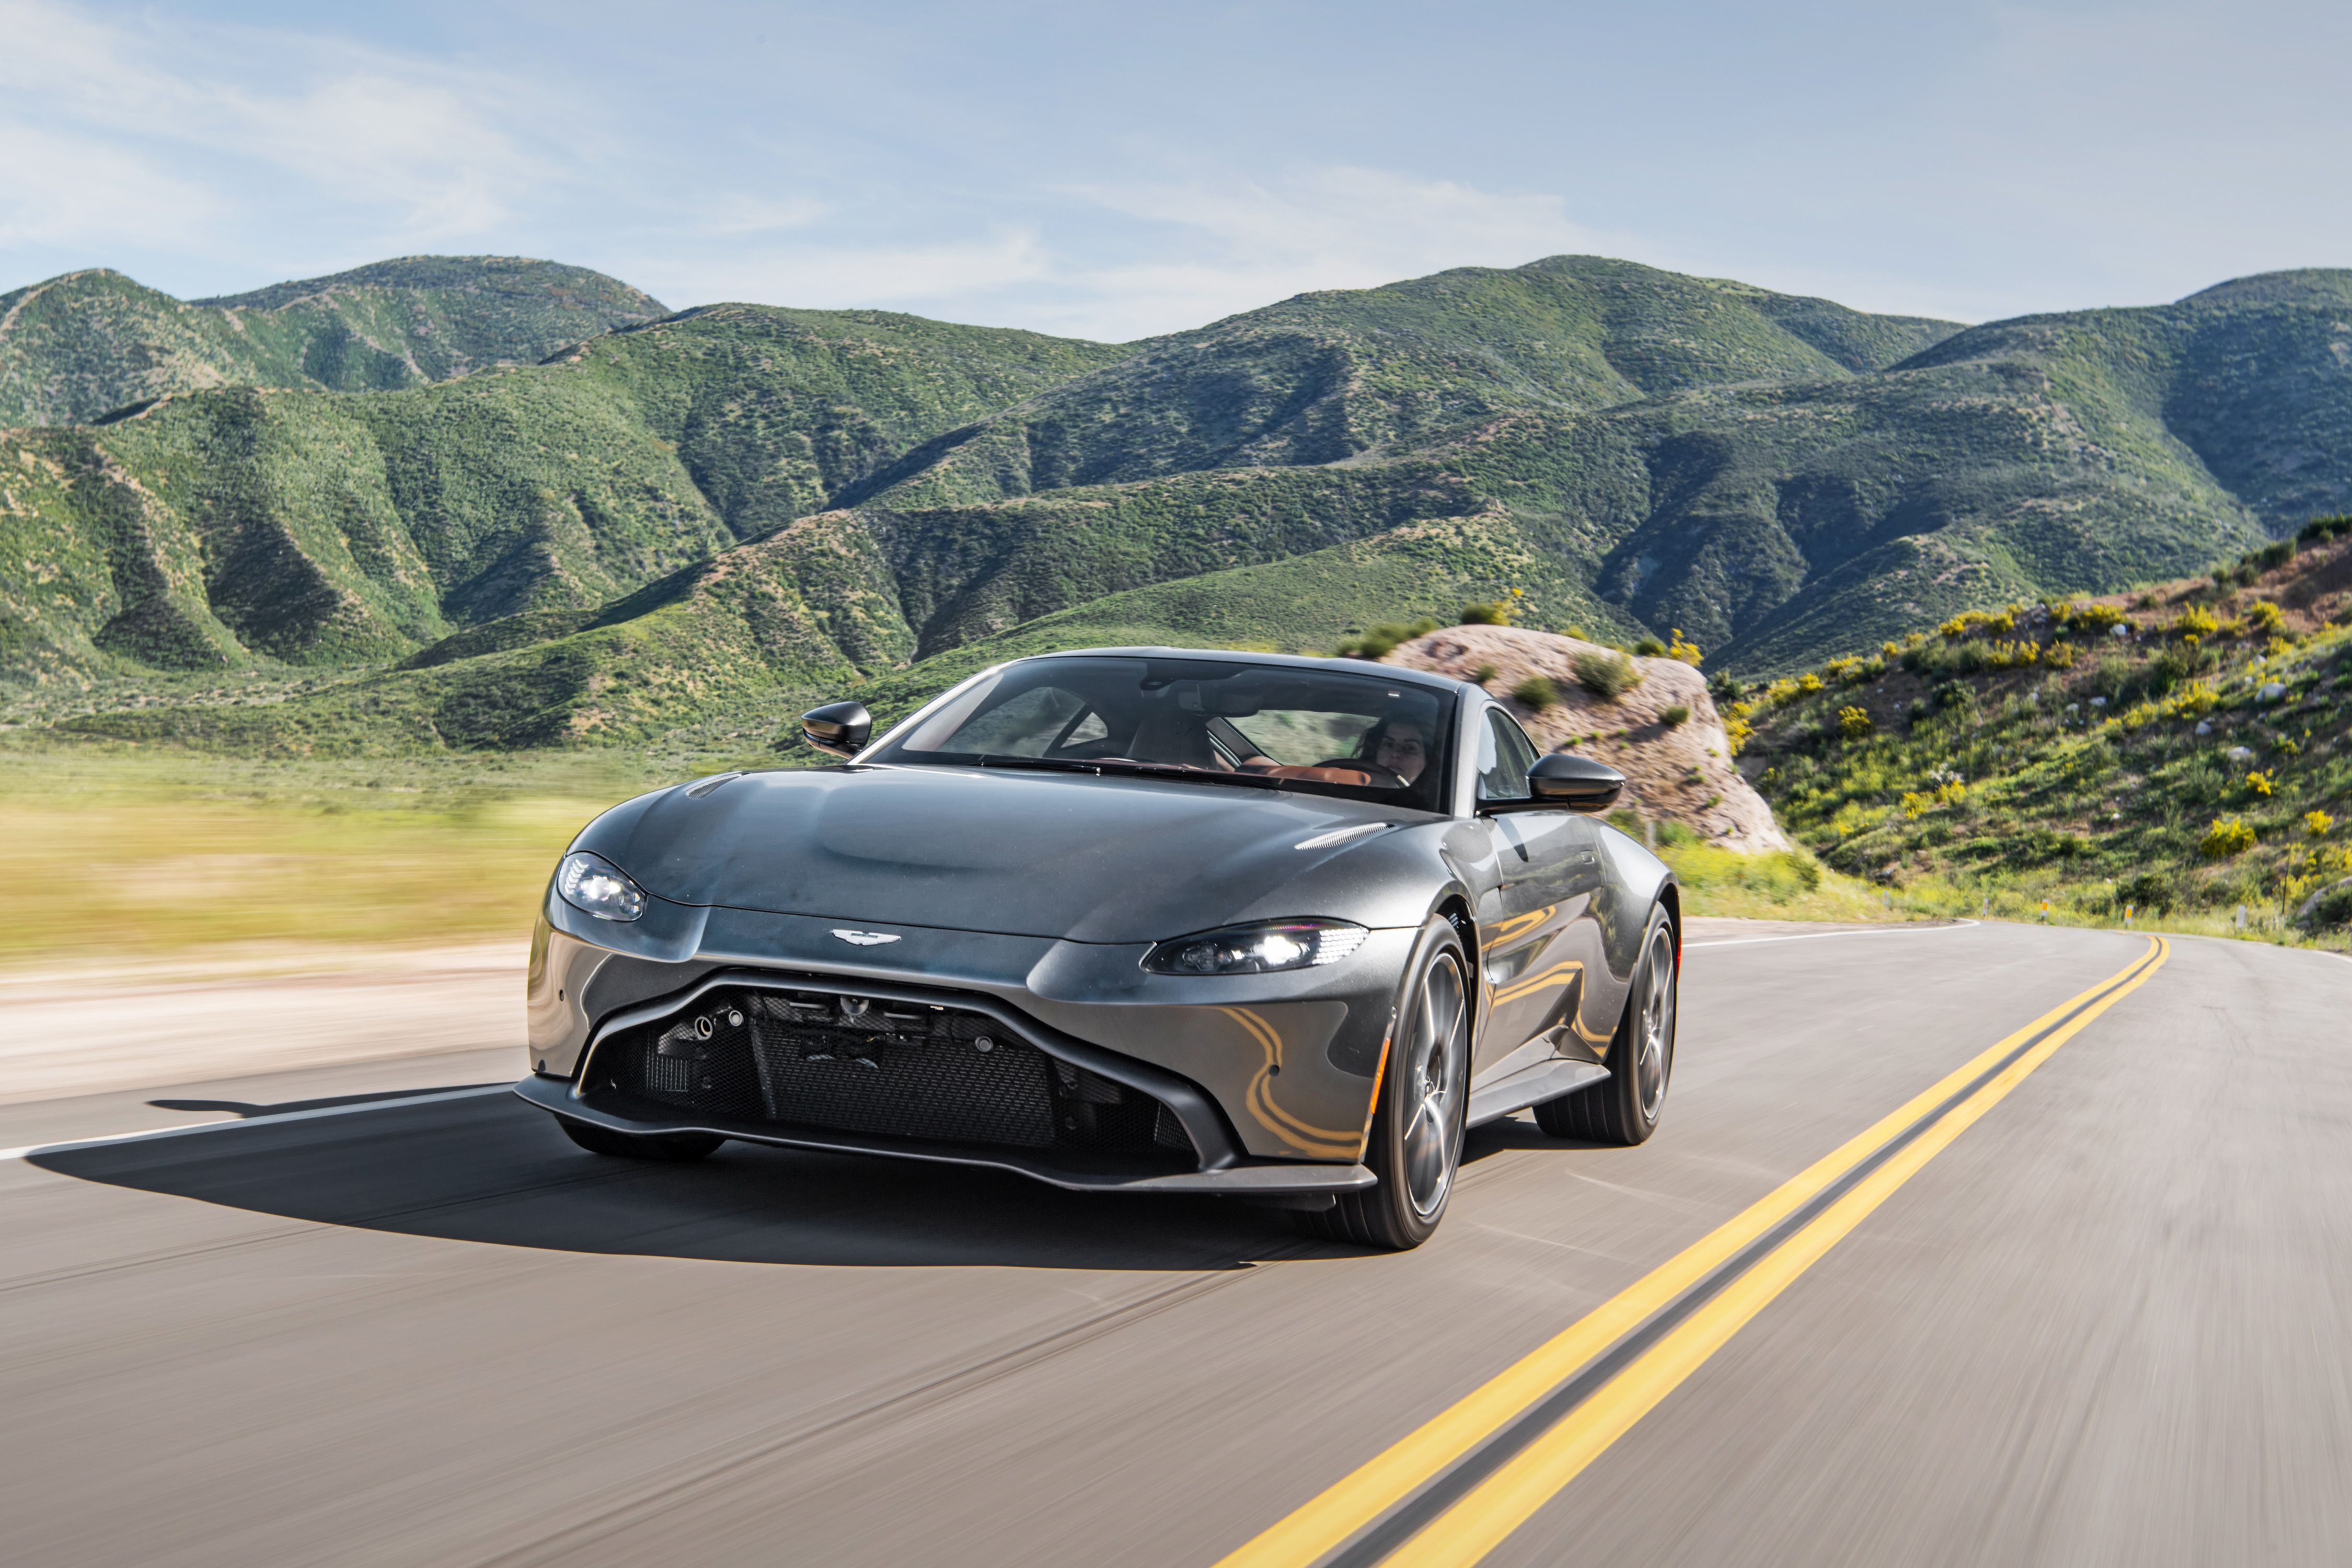 2020 Aston Martin Vantage review: Best when loud - CNET